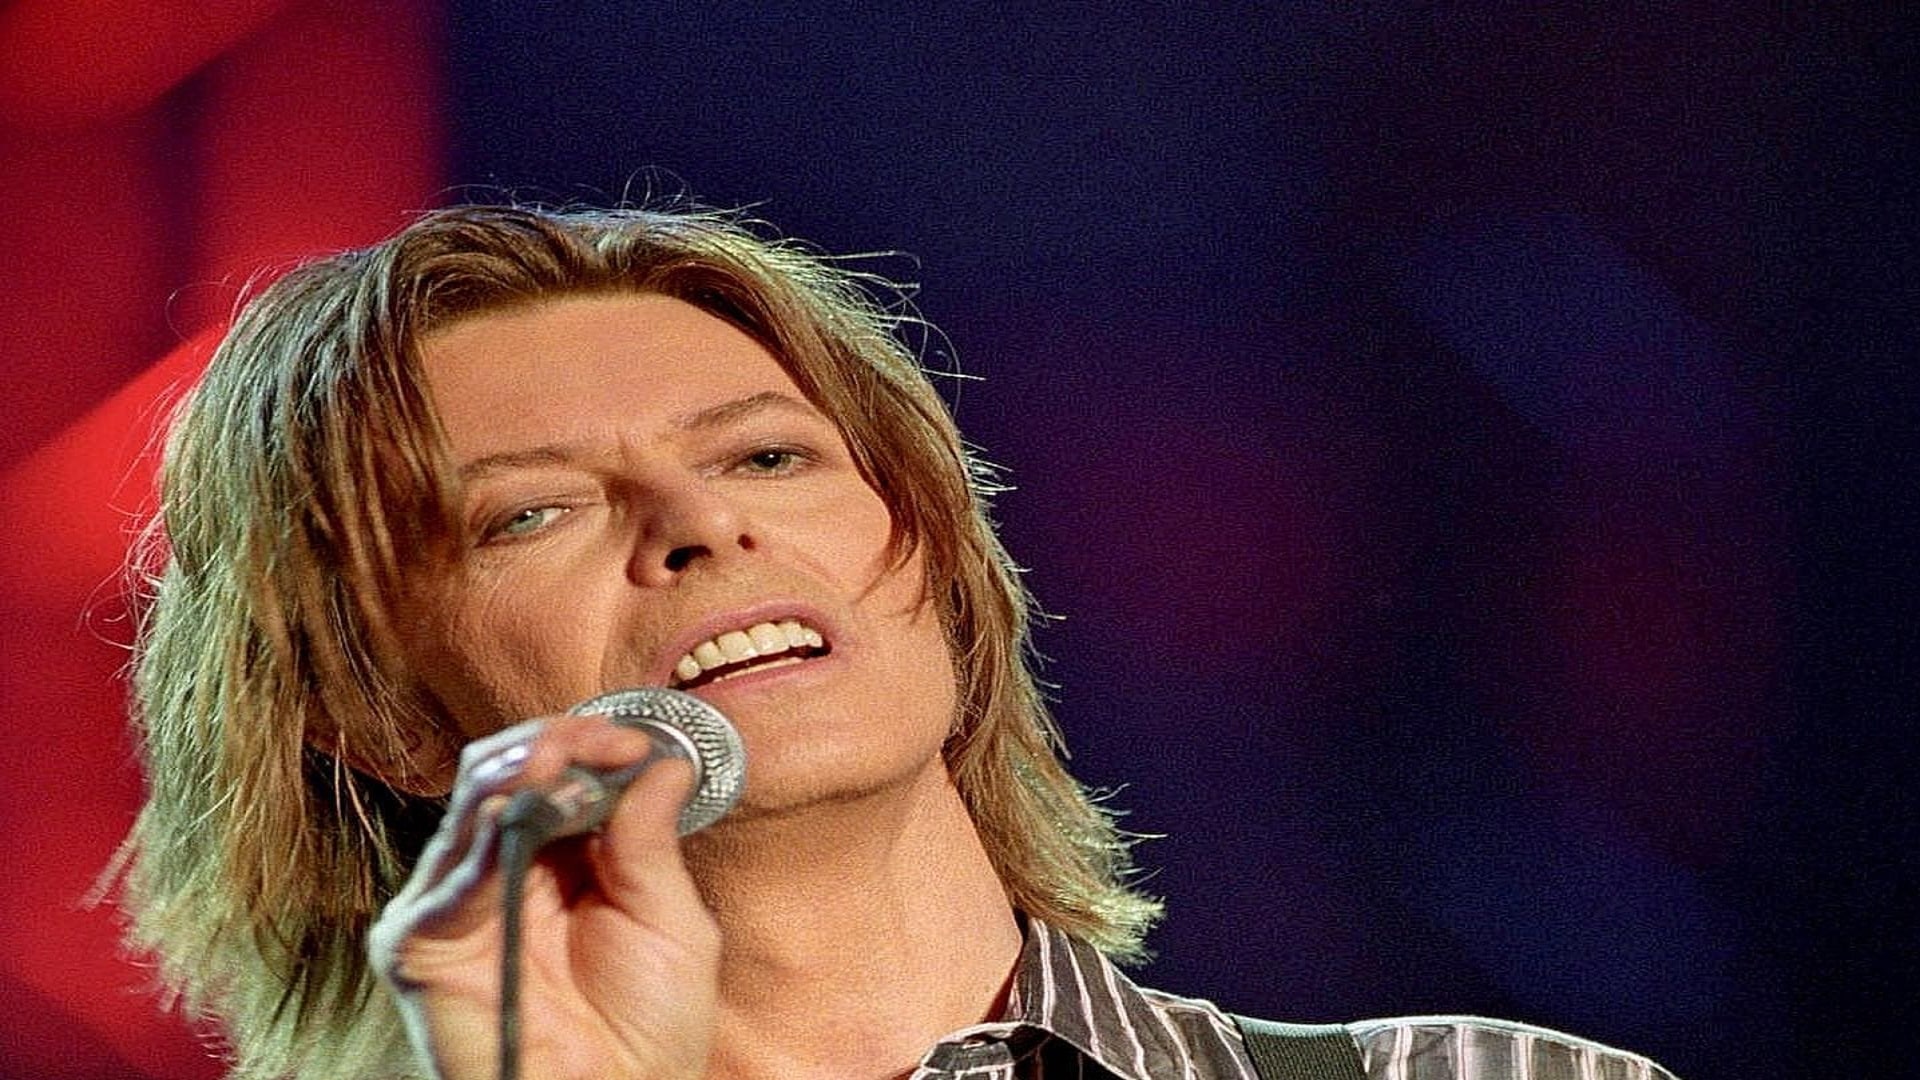 David Bowie, eterno